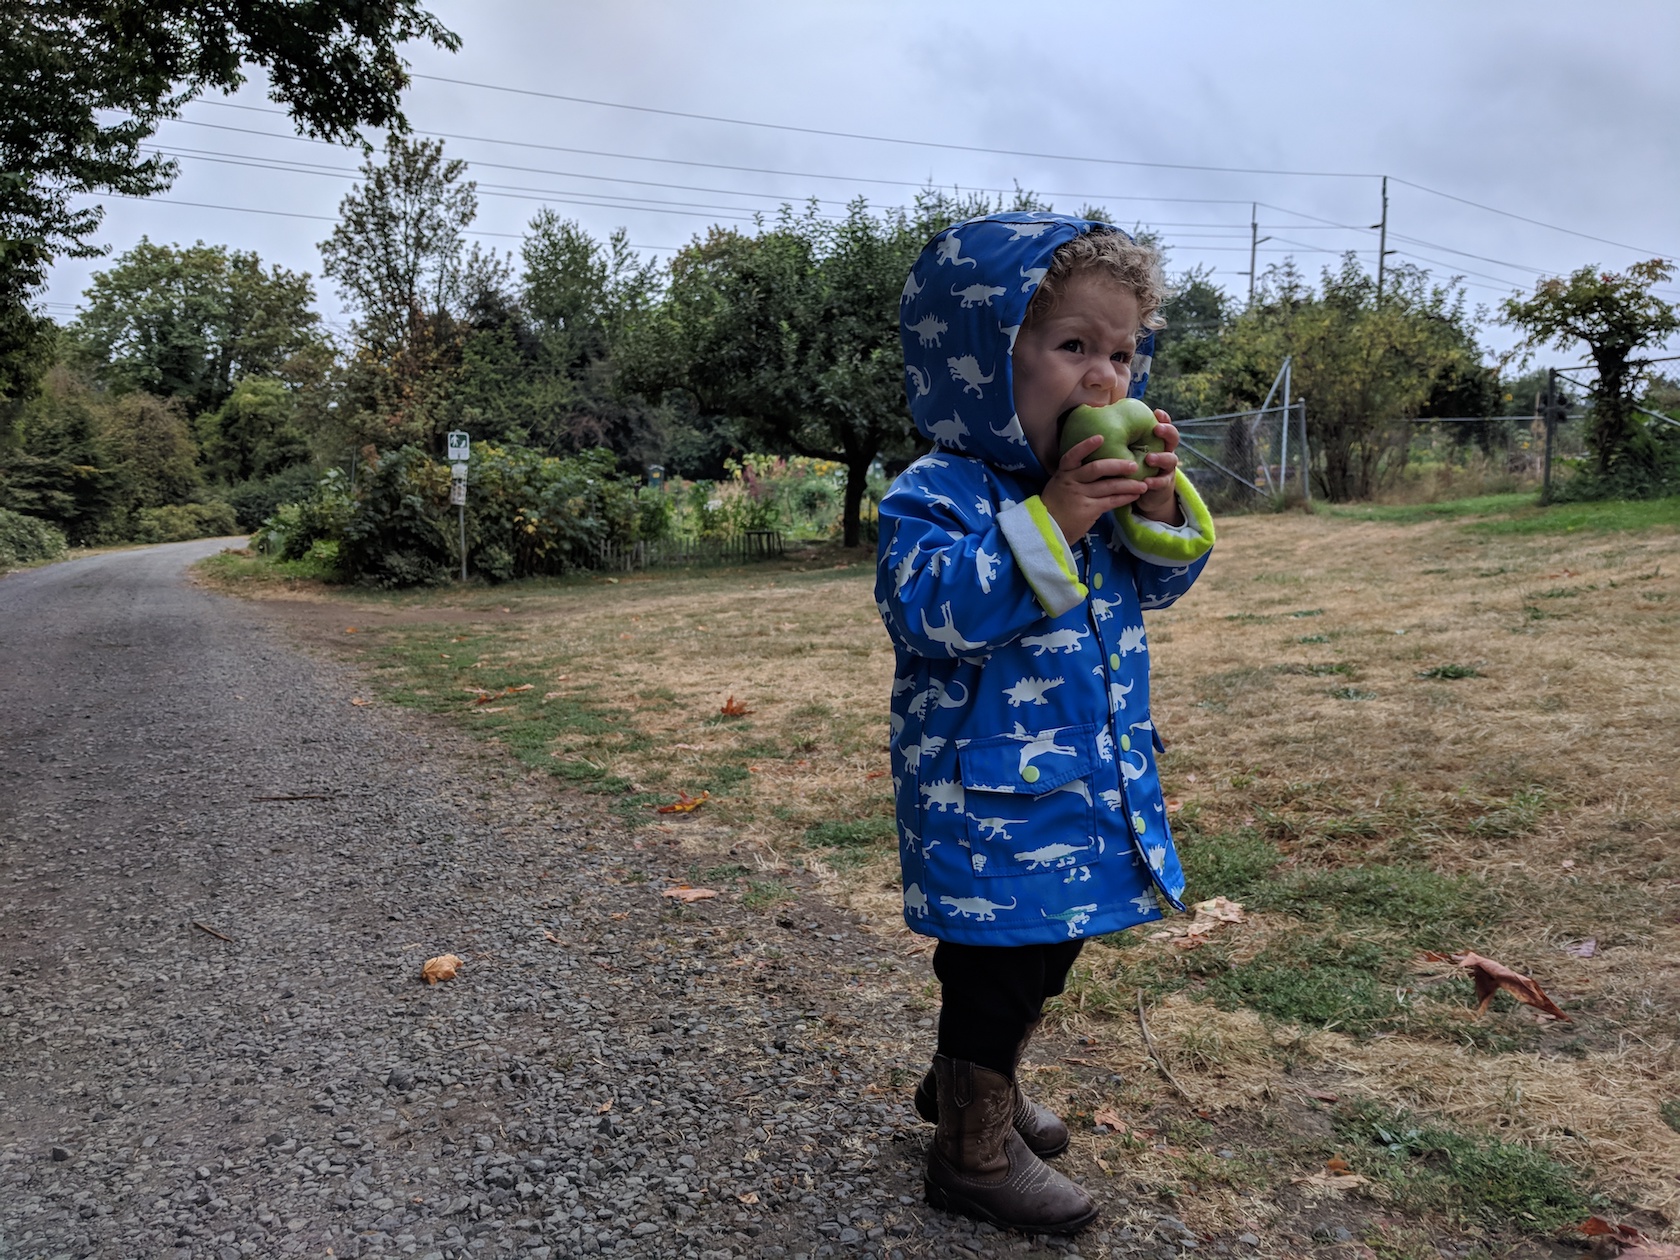 idara eating apple at garden